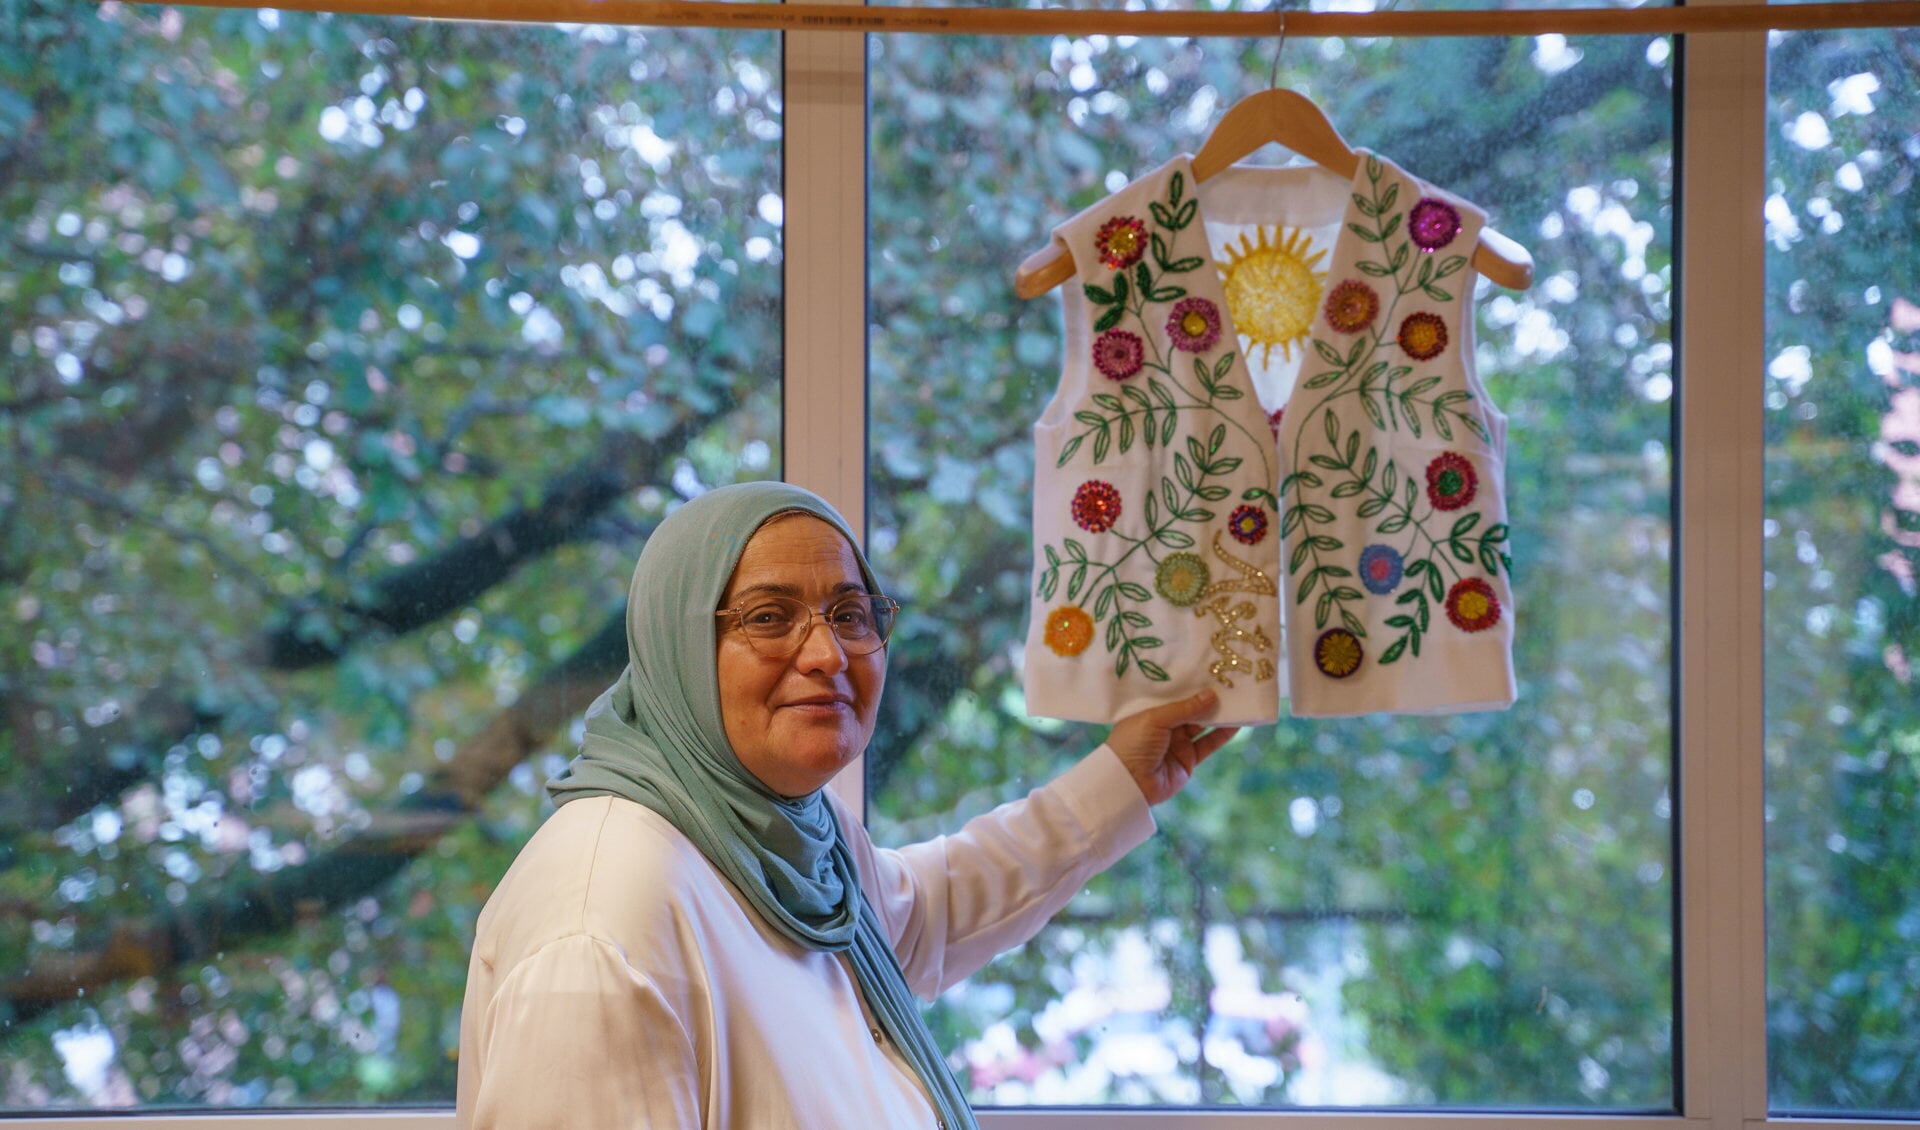 Tara laat trots het geborduurde jasje zien dat voorzien is van verschillende symbolische motieven uit haar thuisland Koerdistan.